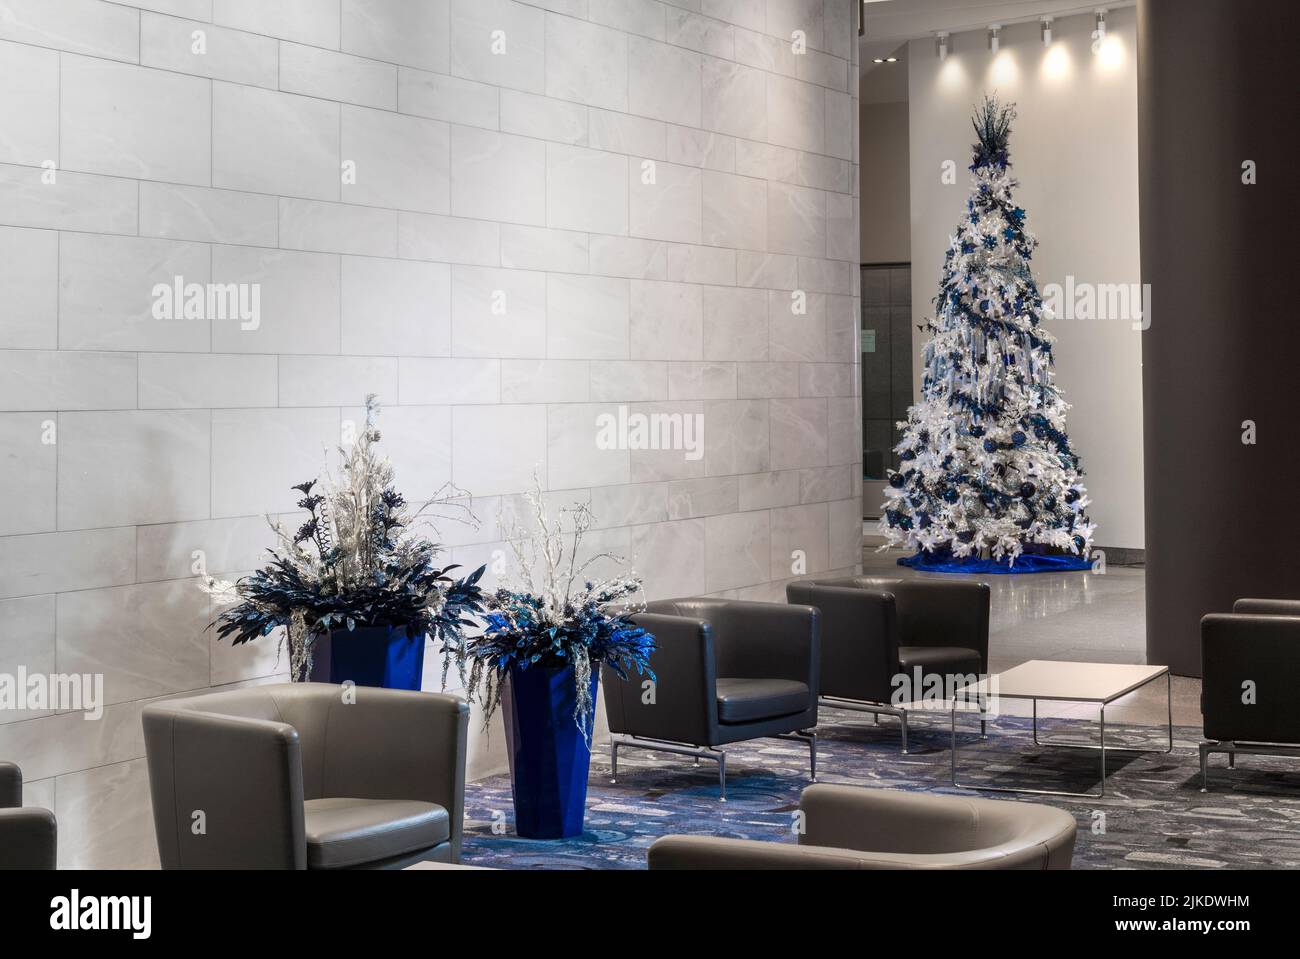 Hall de bureau moderne, bâtiment commercial, décoré pour Noël avec arbre de Noël, Philadelphie, Pennsylvanie, États-Unis Banque D'Images